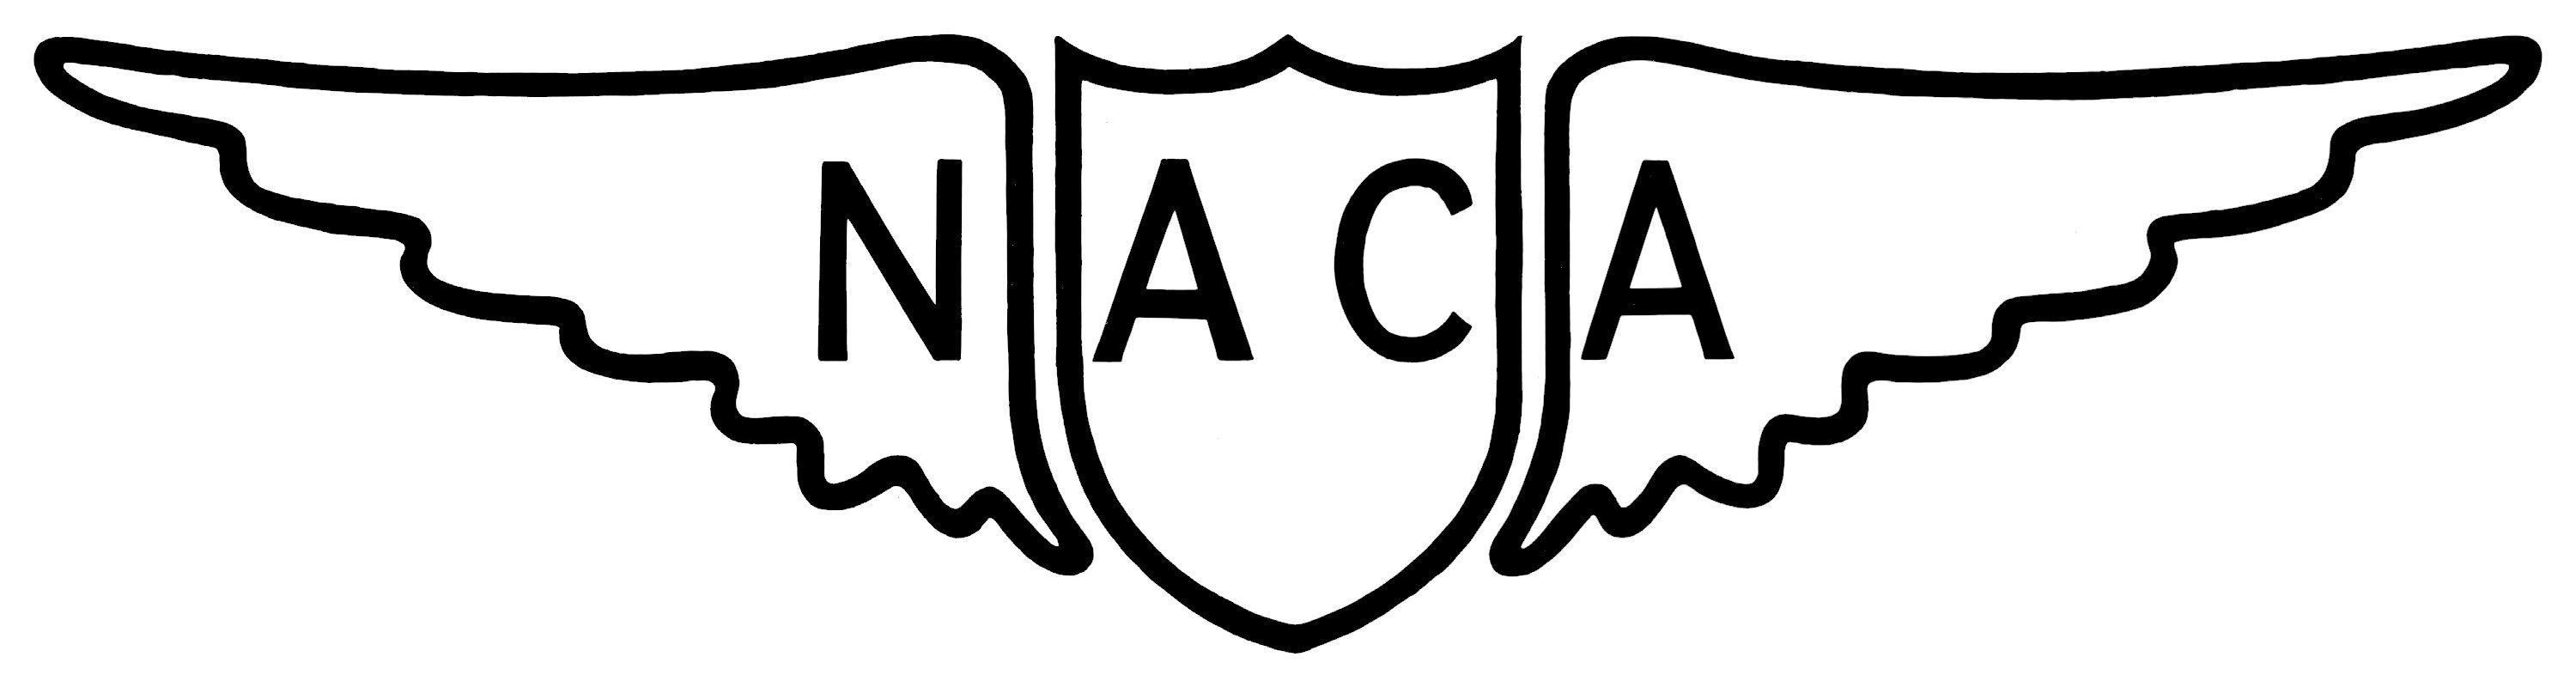 NACA Logo - NACA Logo